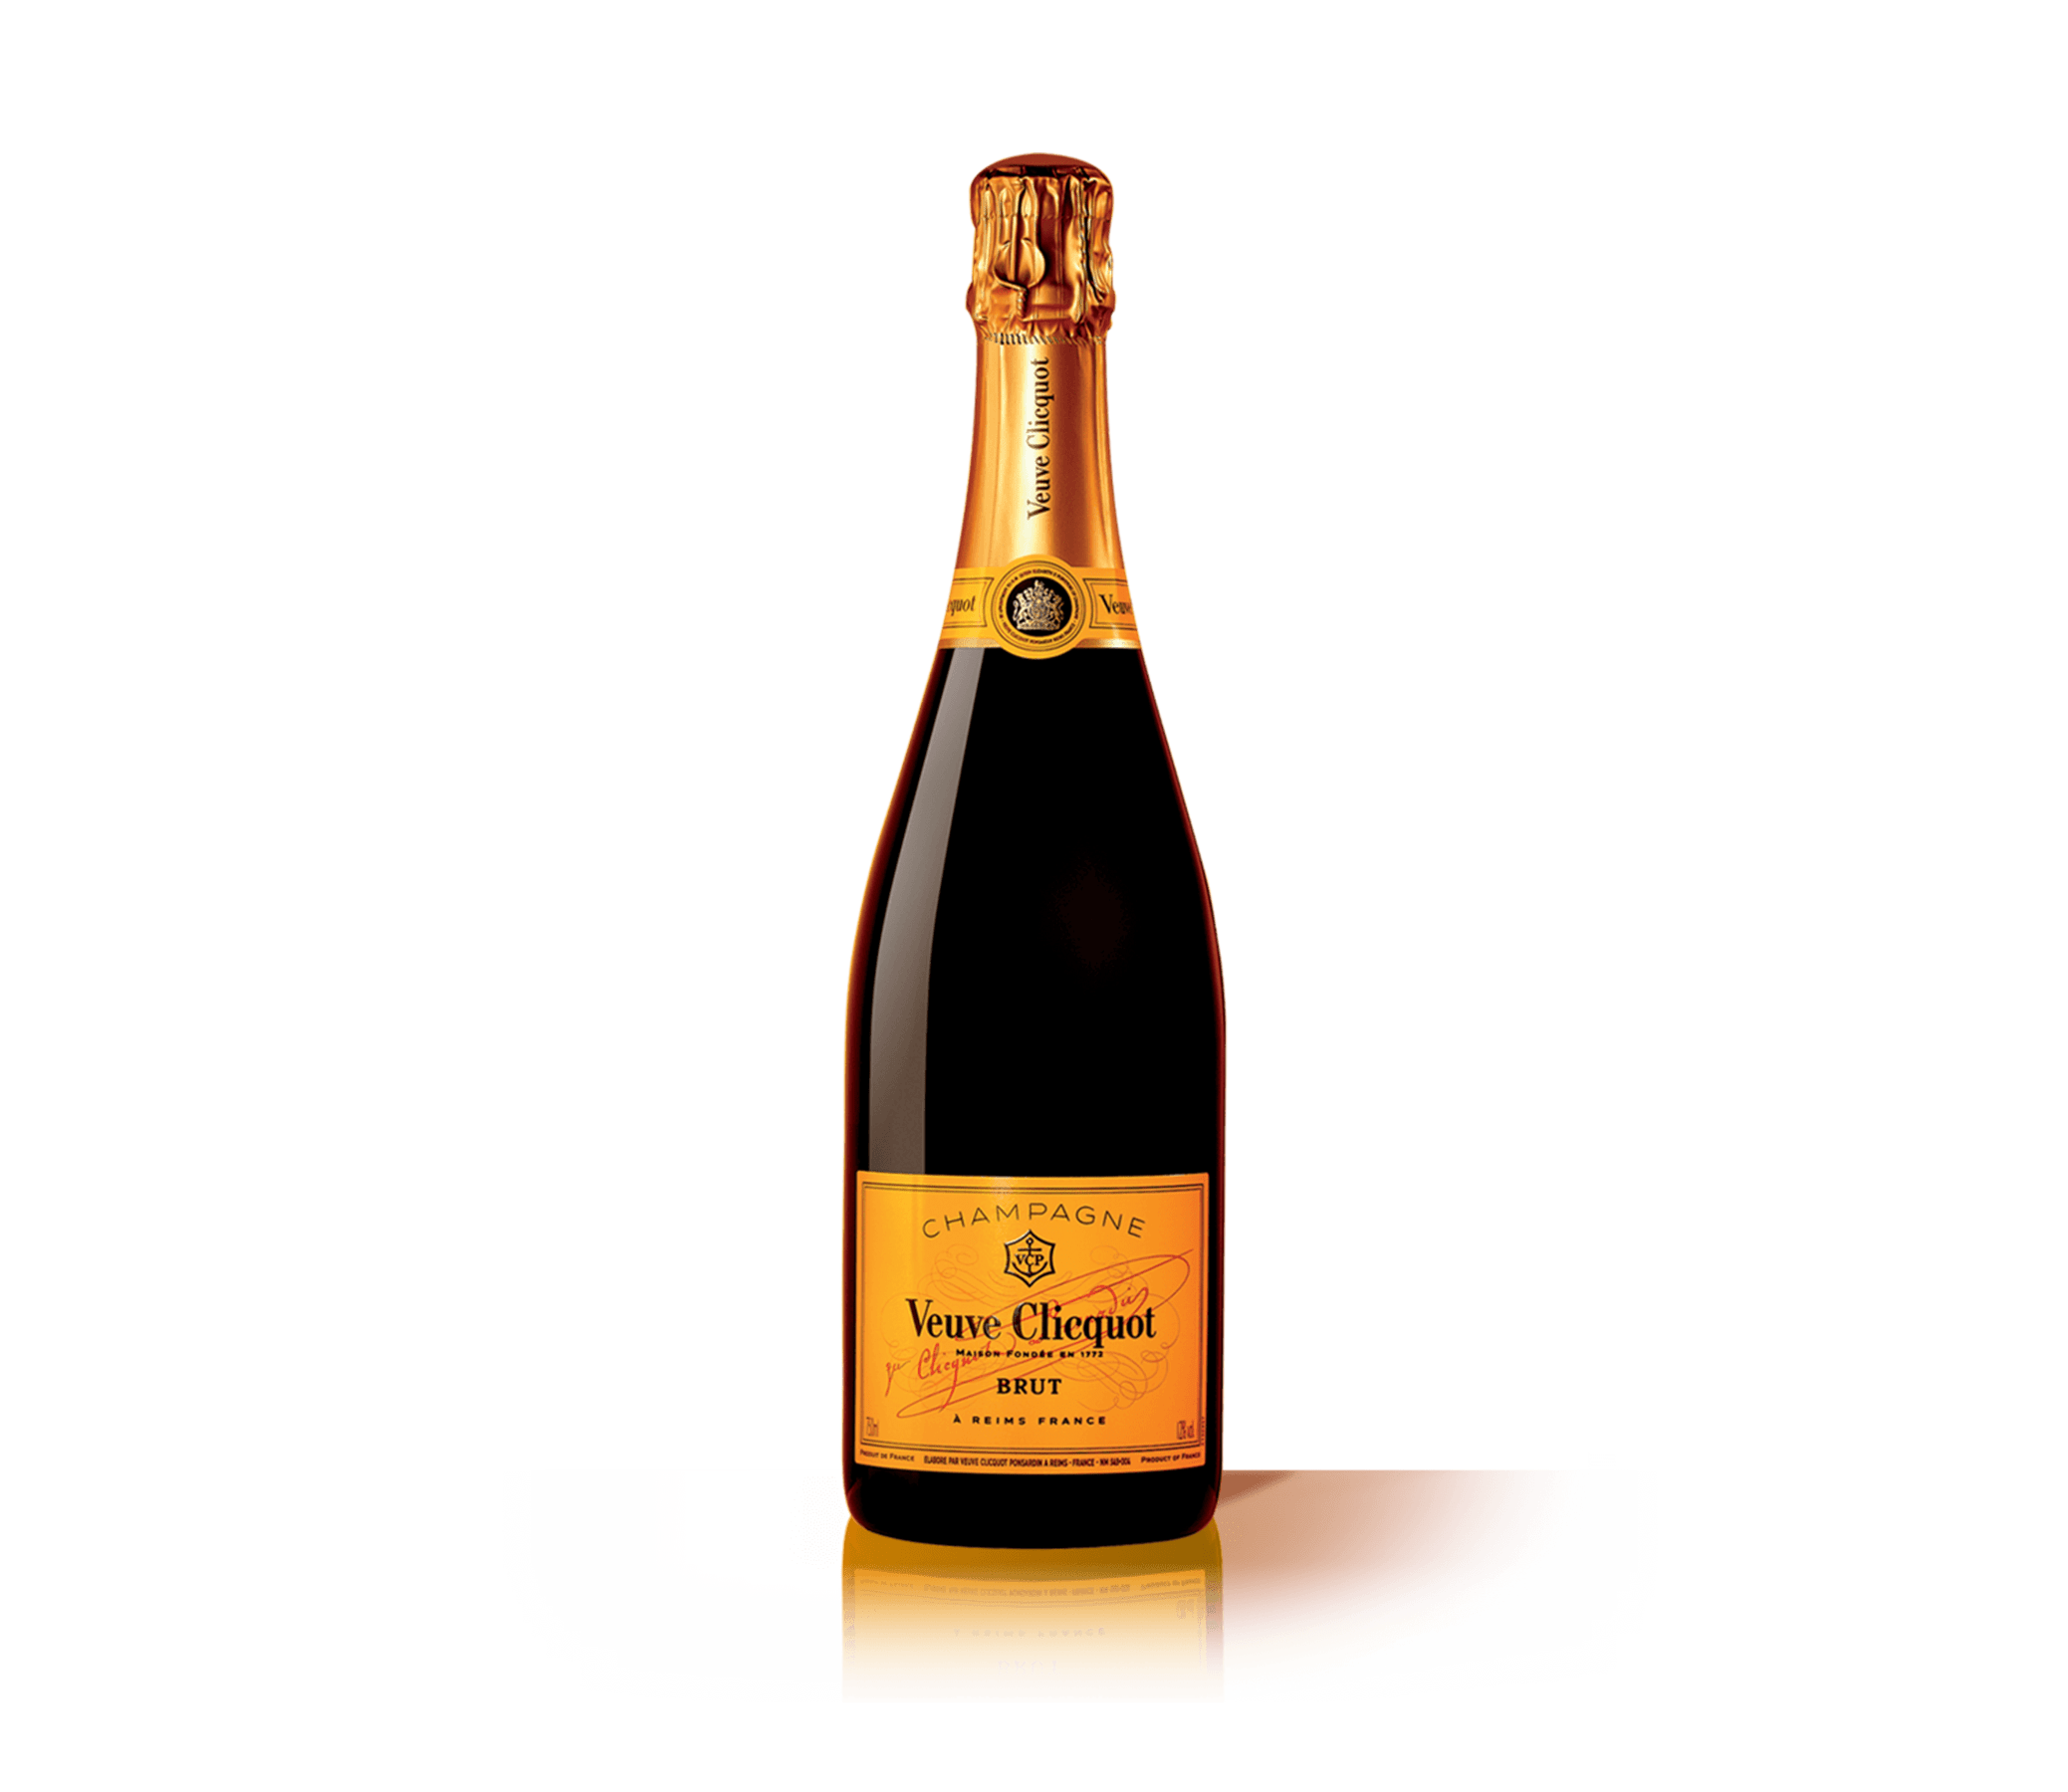 Шампанское Veuve Clicquot Rose 2008 0.75 л. Игристое вино французское AOP Champagne Veuve Clicquot Brut 0.75 l. Veuve Clicquot Brut 0.75 л. Шампанское "Veuve Clicquot Ponsardin" (вдова Клико Понсардин). Шампанское classic